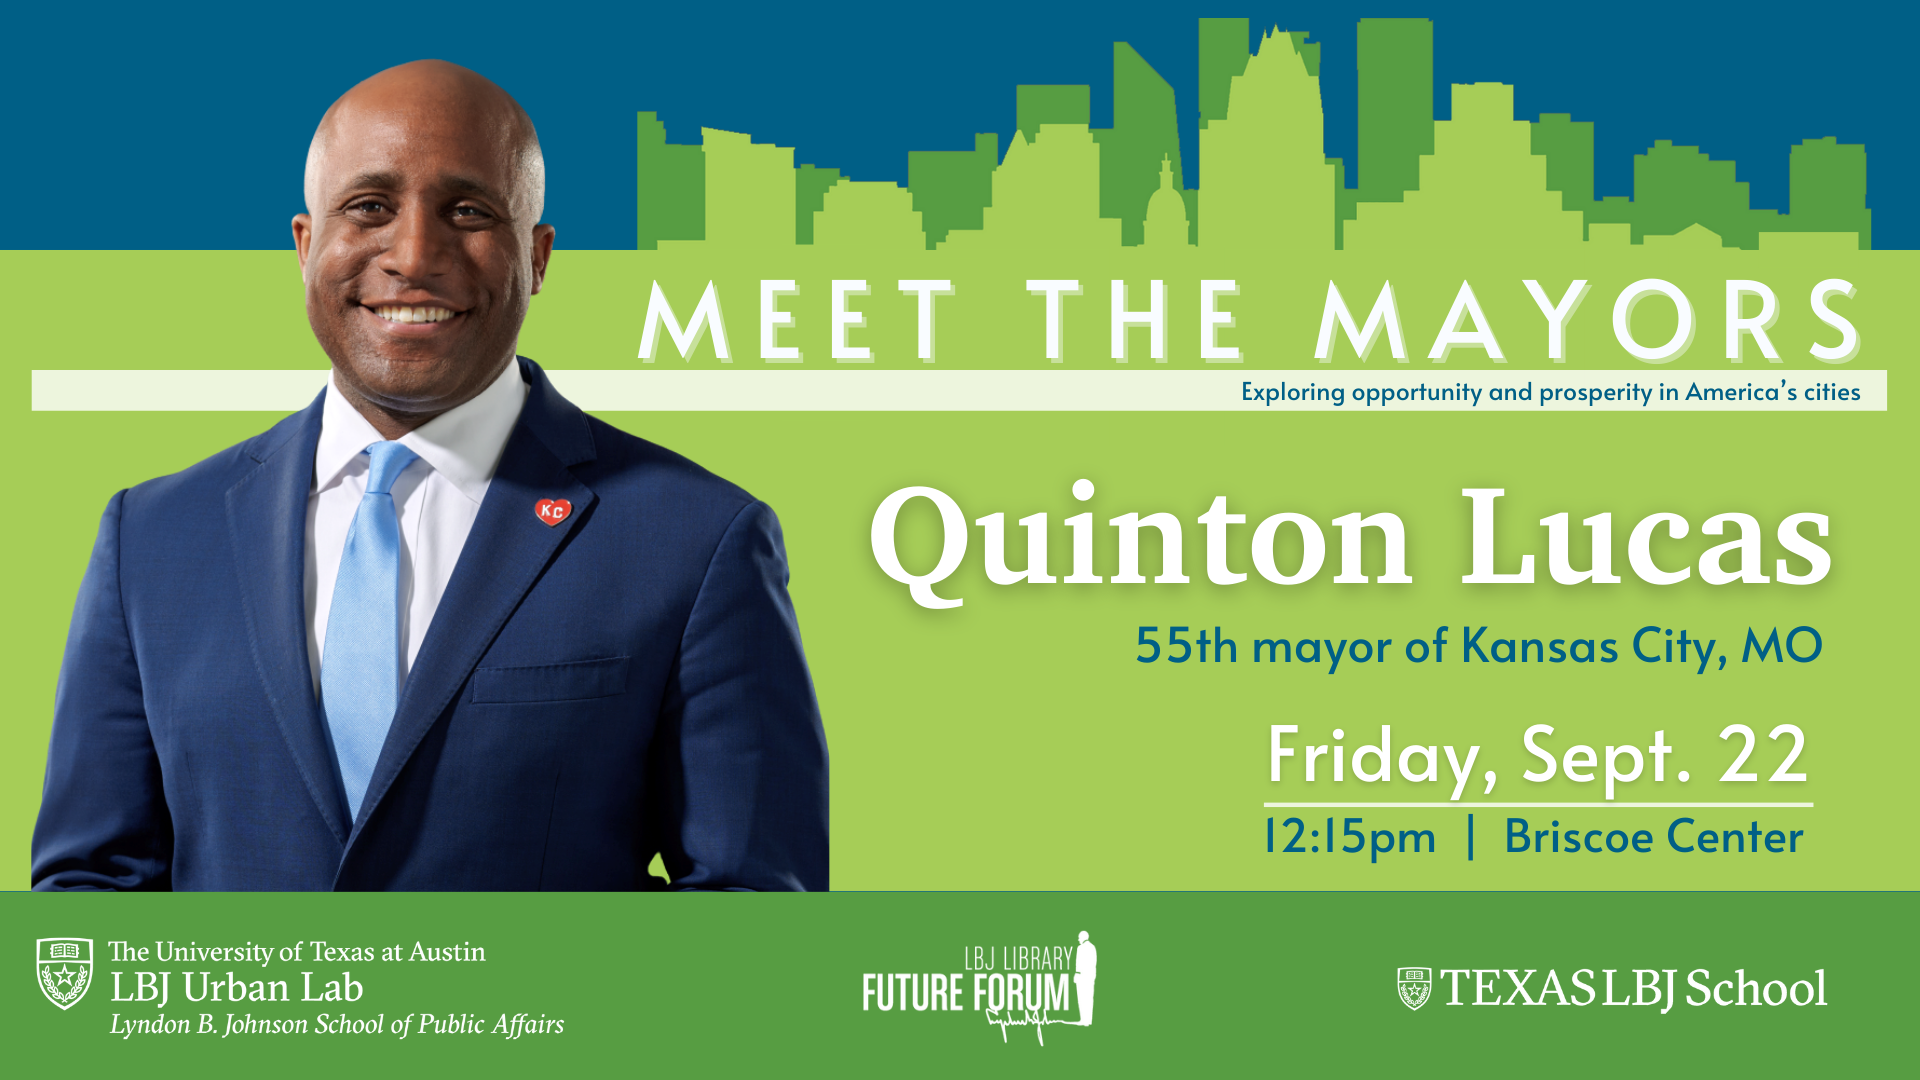 Kansas City's Quinton Lucas Meet the Mayors